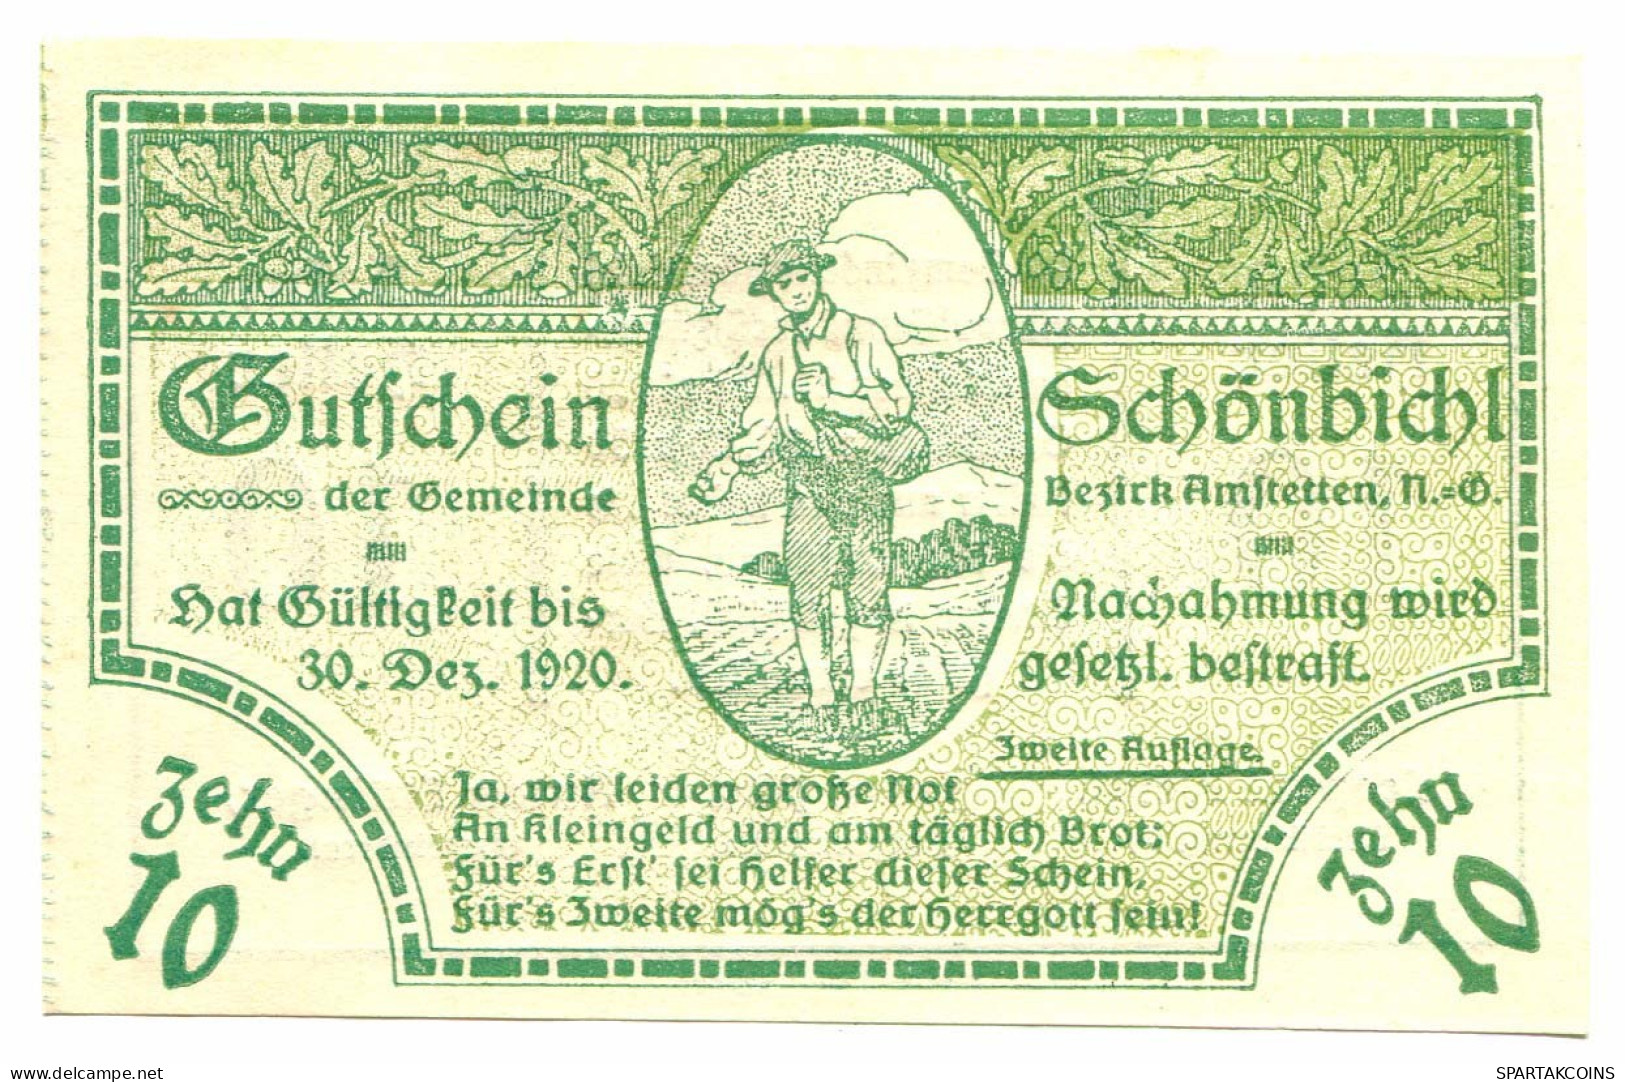 10 Heller 1920 SCHONBICHL Österreich UNC Notgeld Papiergeld Banknote #P10364 - [11] Local Banknote Issues